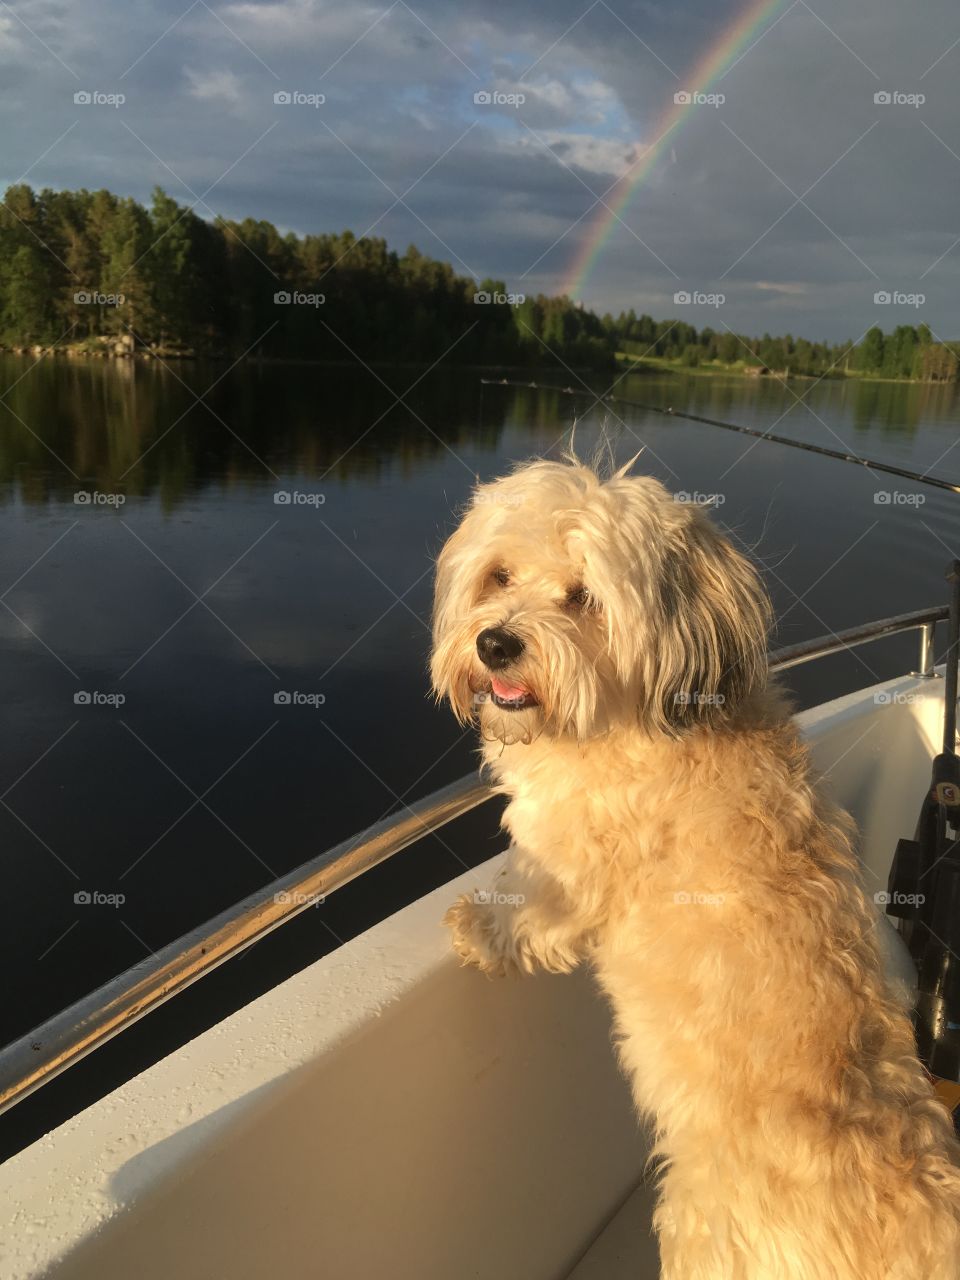 Rainbow dog boat fishing